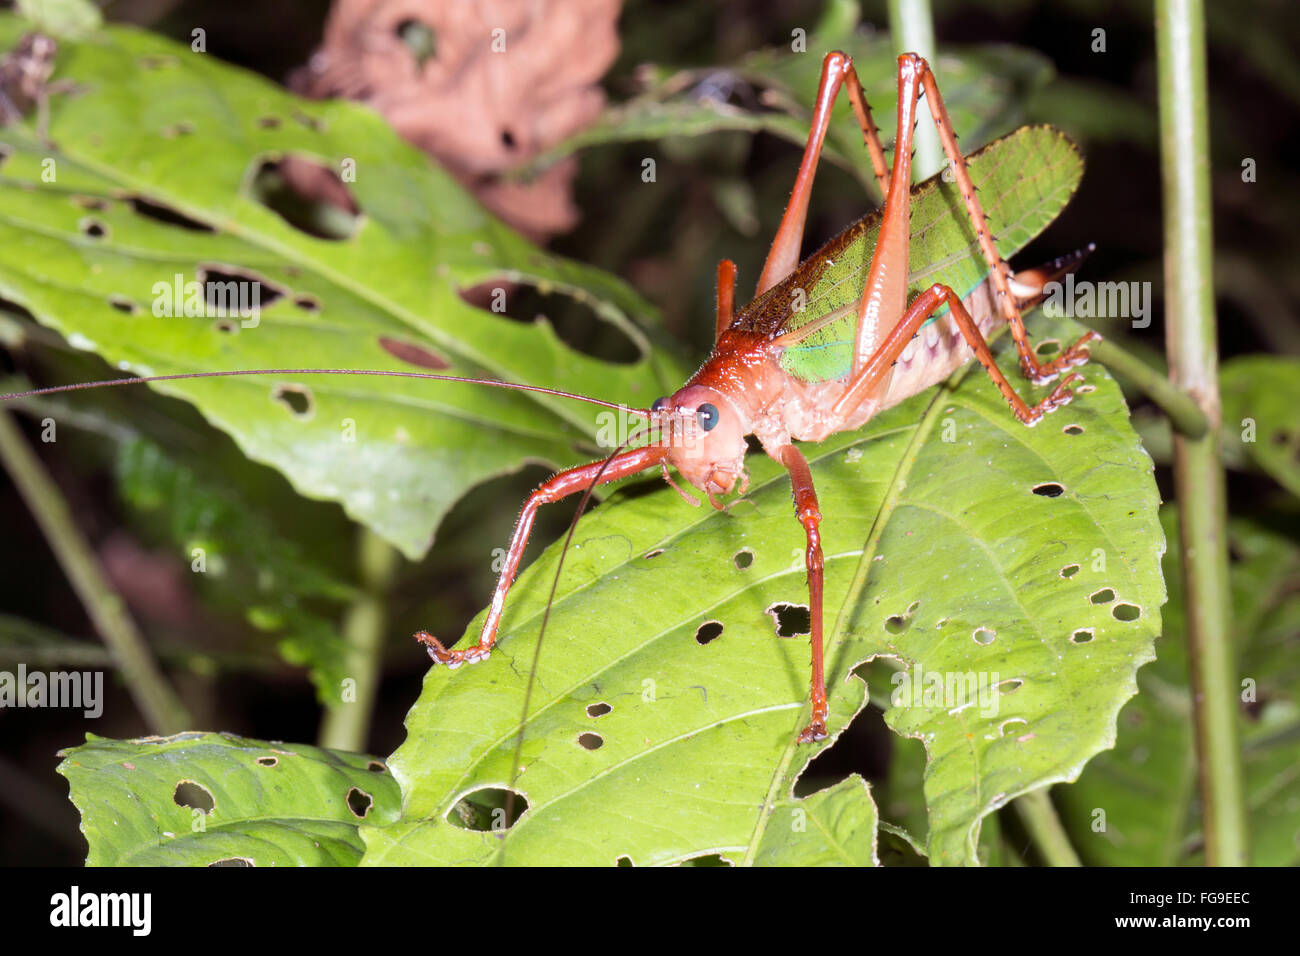 Green bush cricket dans une forêt d'arbustes, province de Pastaza en Amazonie équatorienne. Banque D'Images